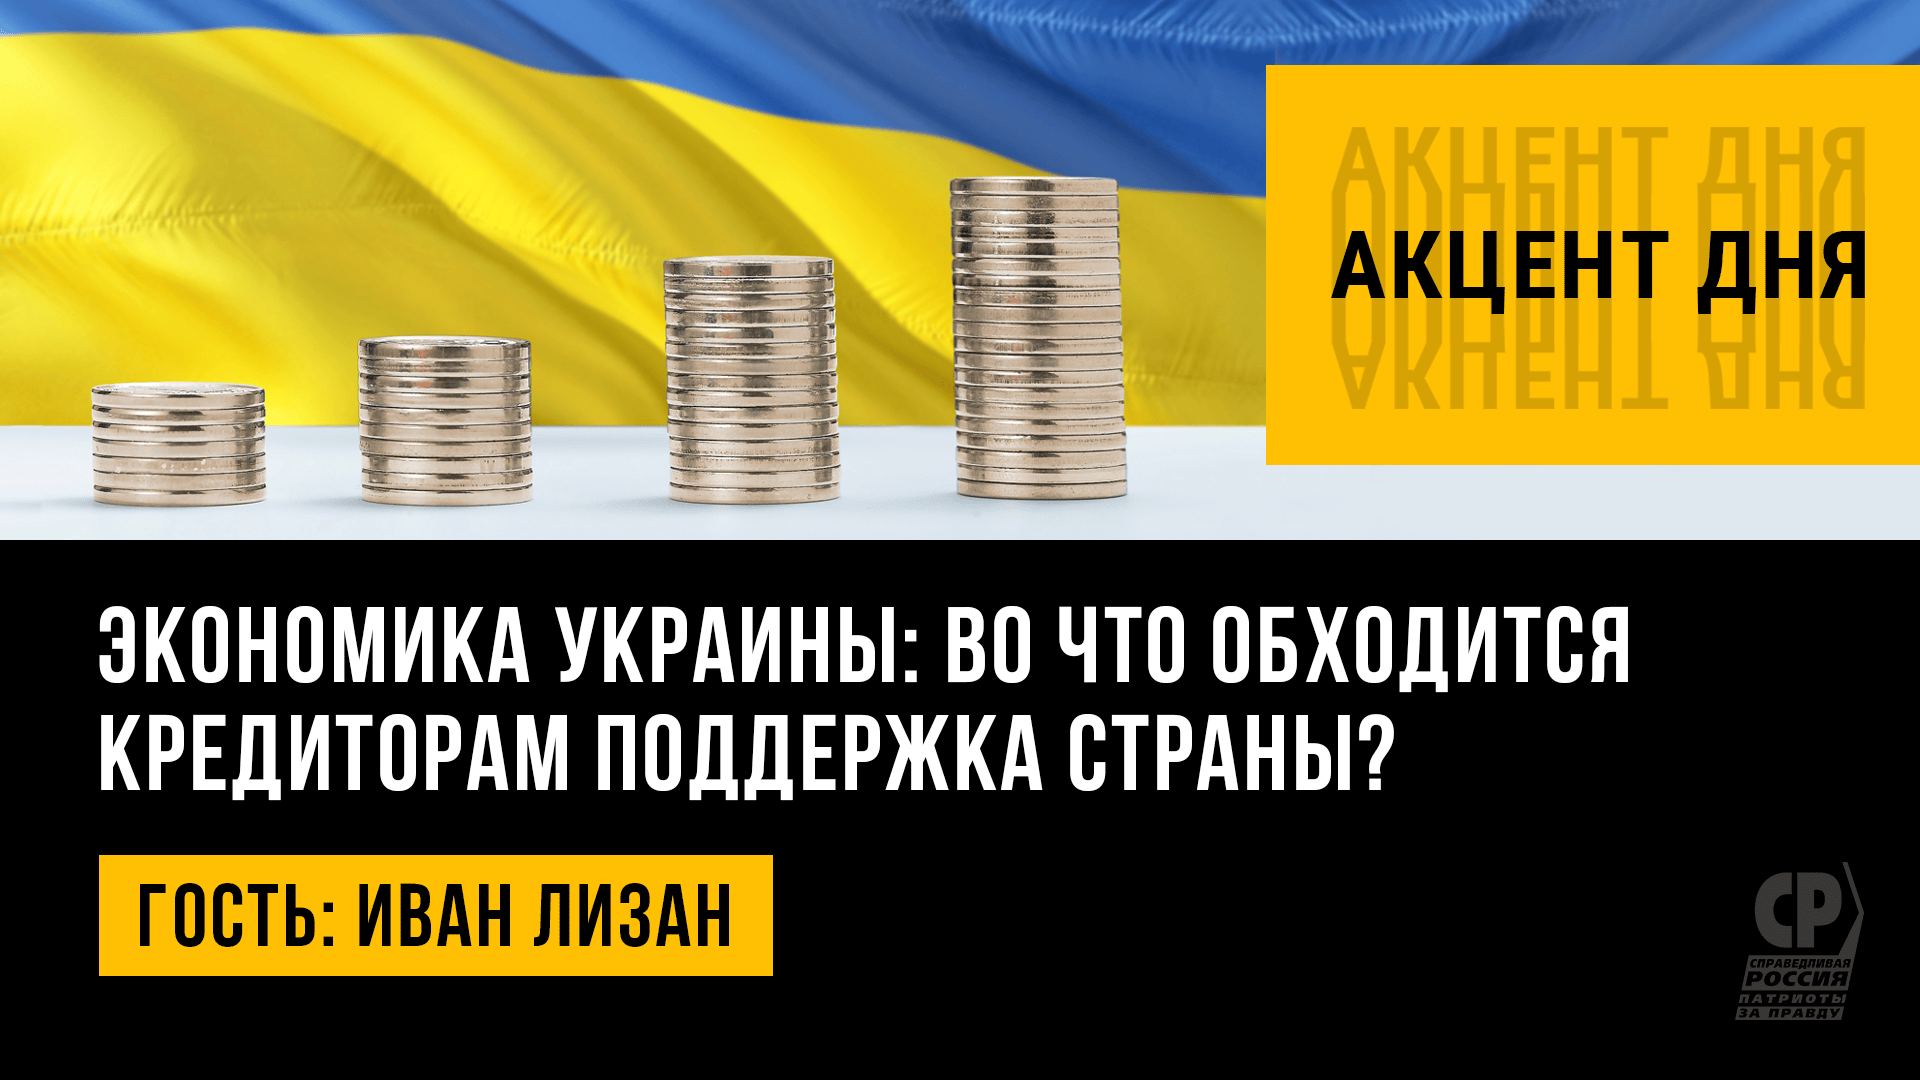 Экономика Украины: во что обходится кредиторам поддержка страны? Иван Лизан